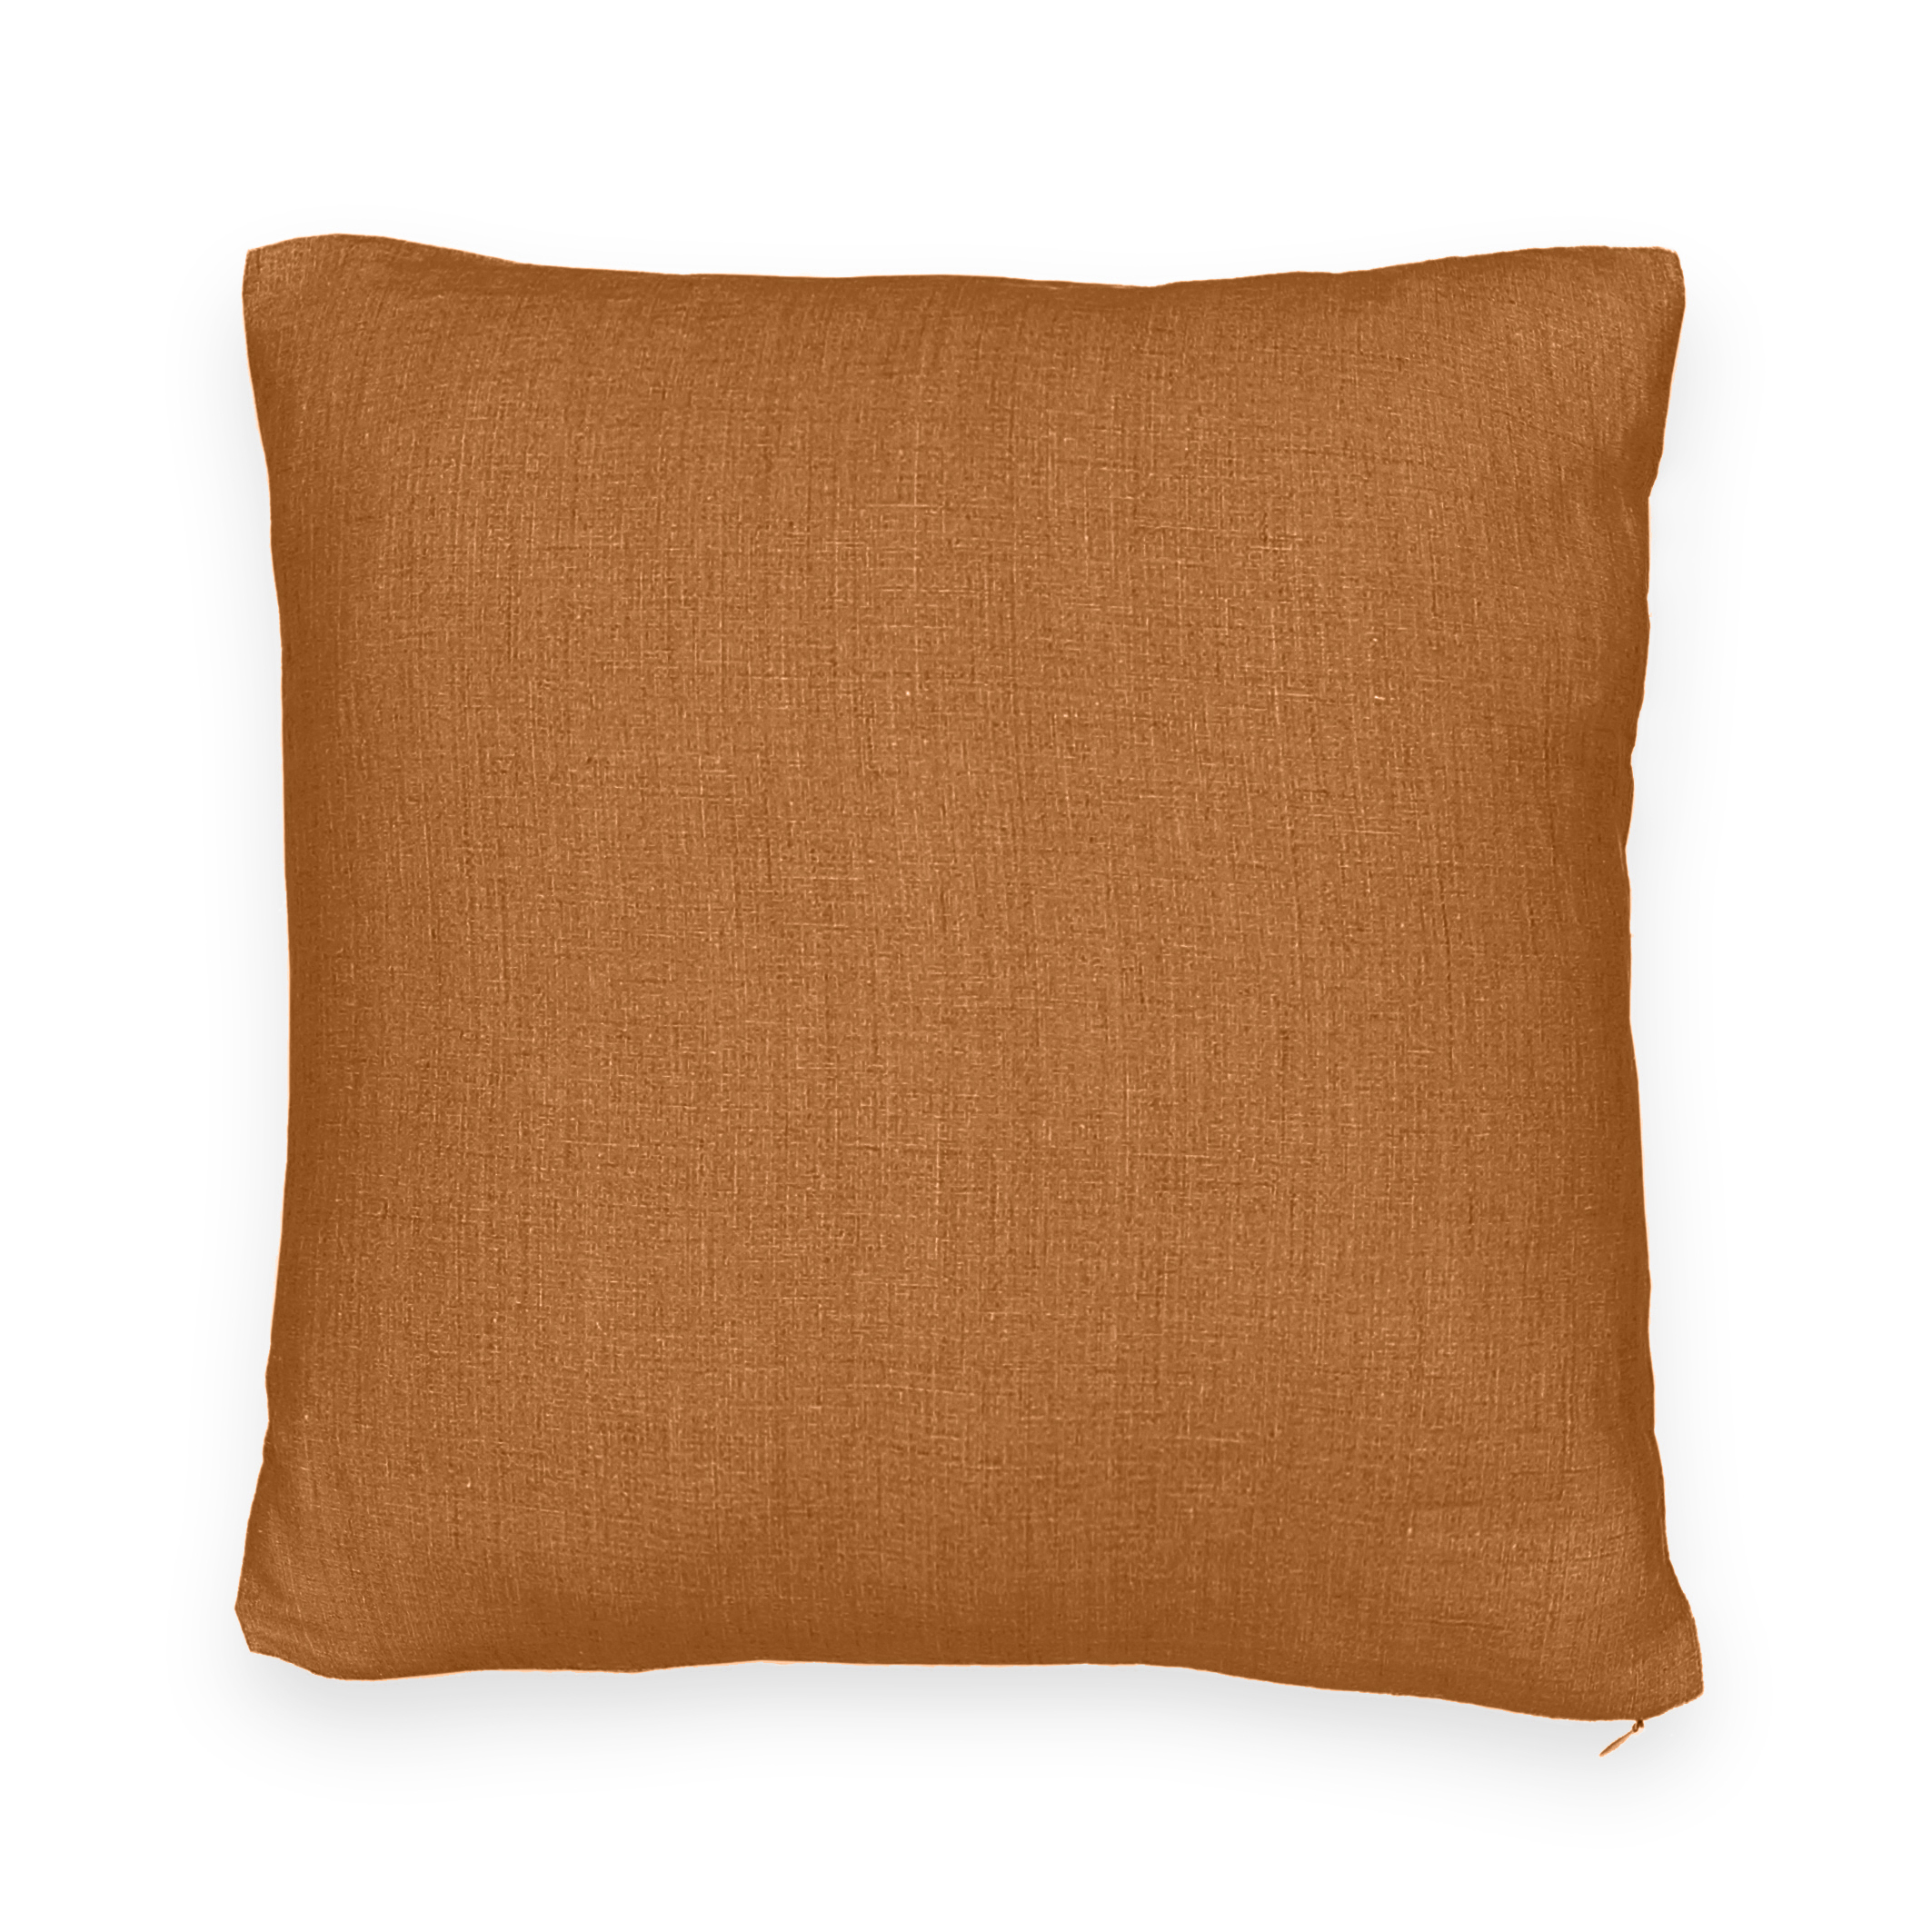 lf336n Red Blue Brown Khaki Cream Round High Quality Cotton Canvas Cushion Cover 